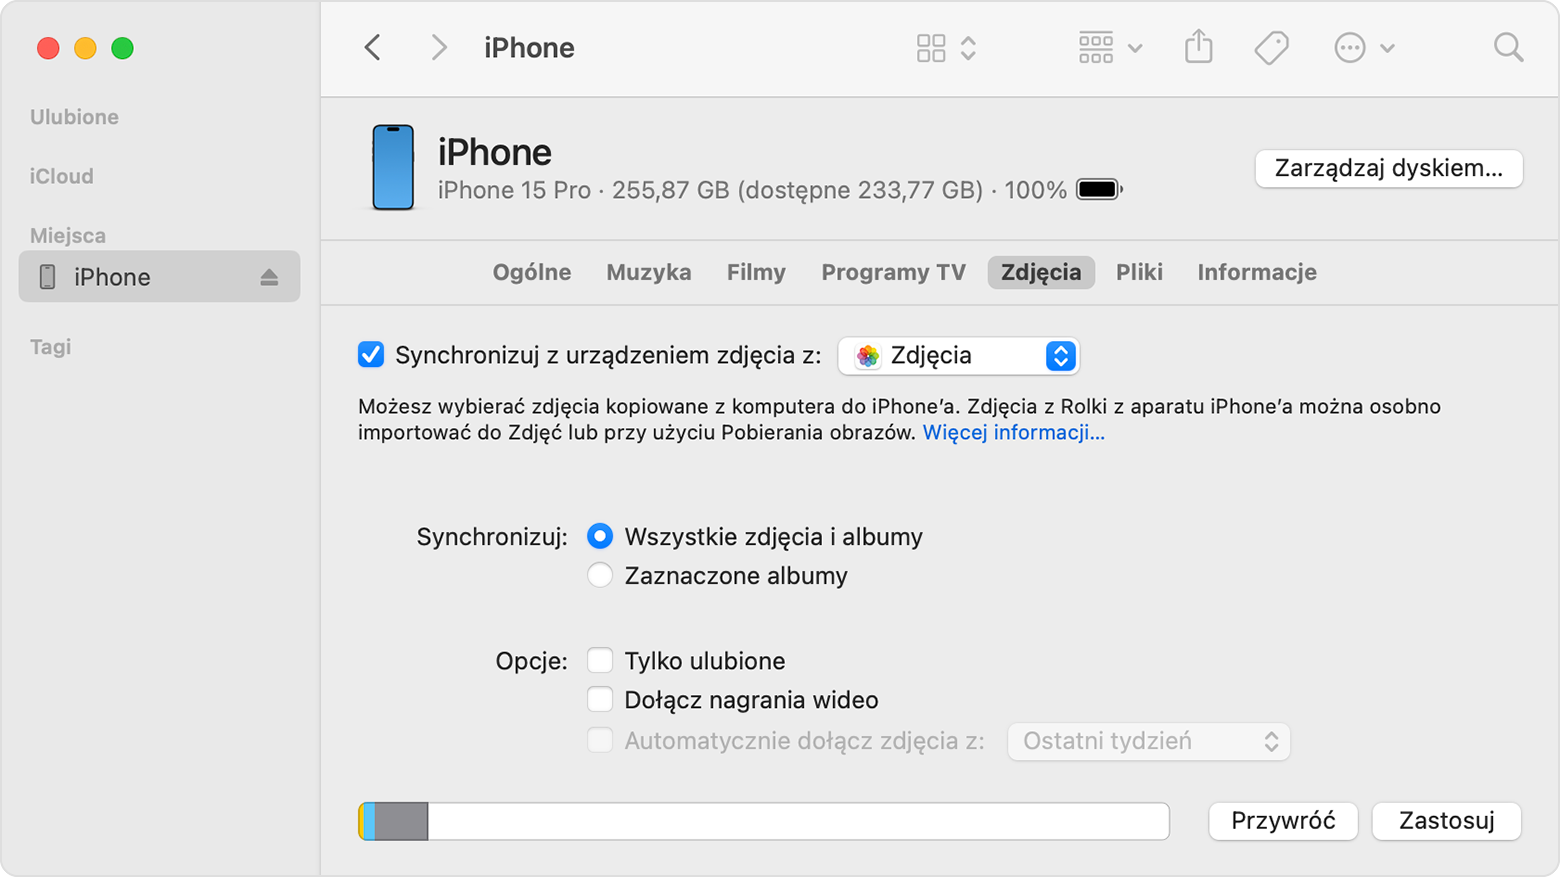 iPhone wyświetlający opcję synchronizacji zdjęć z urządzeniem za pomocą aplikacji Zdjęcia